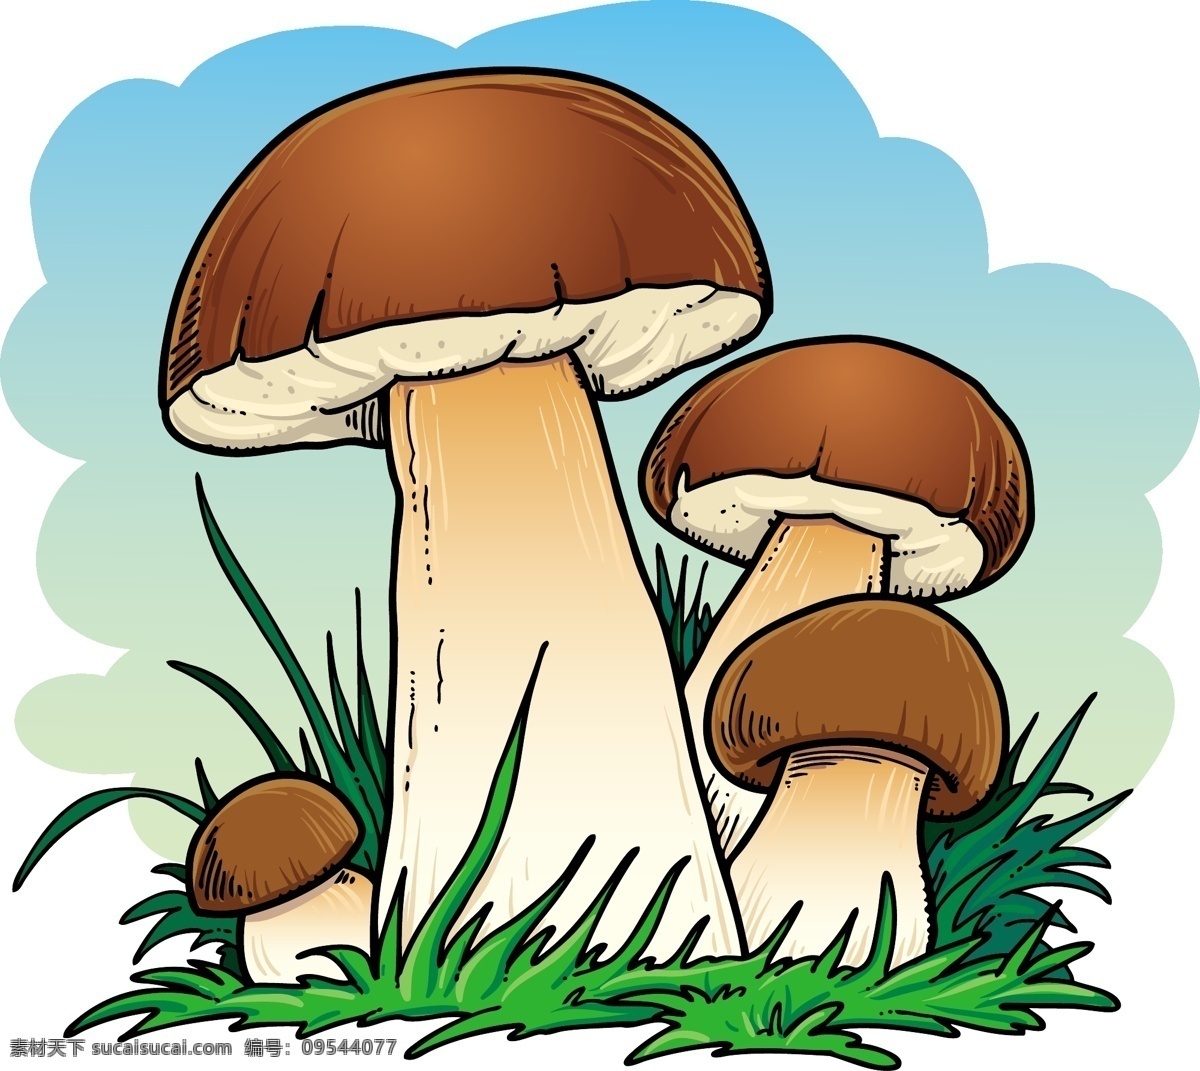 矢量 卡通 蘑菇 模板下载 草地 手绘 食物 美食 蘑菇设计 矢量蘑菇 卡通蘑菇 餐饮美食 生活百科 矢量素材 白色